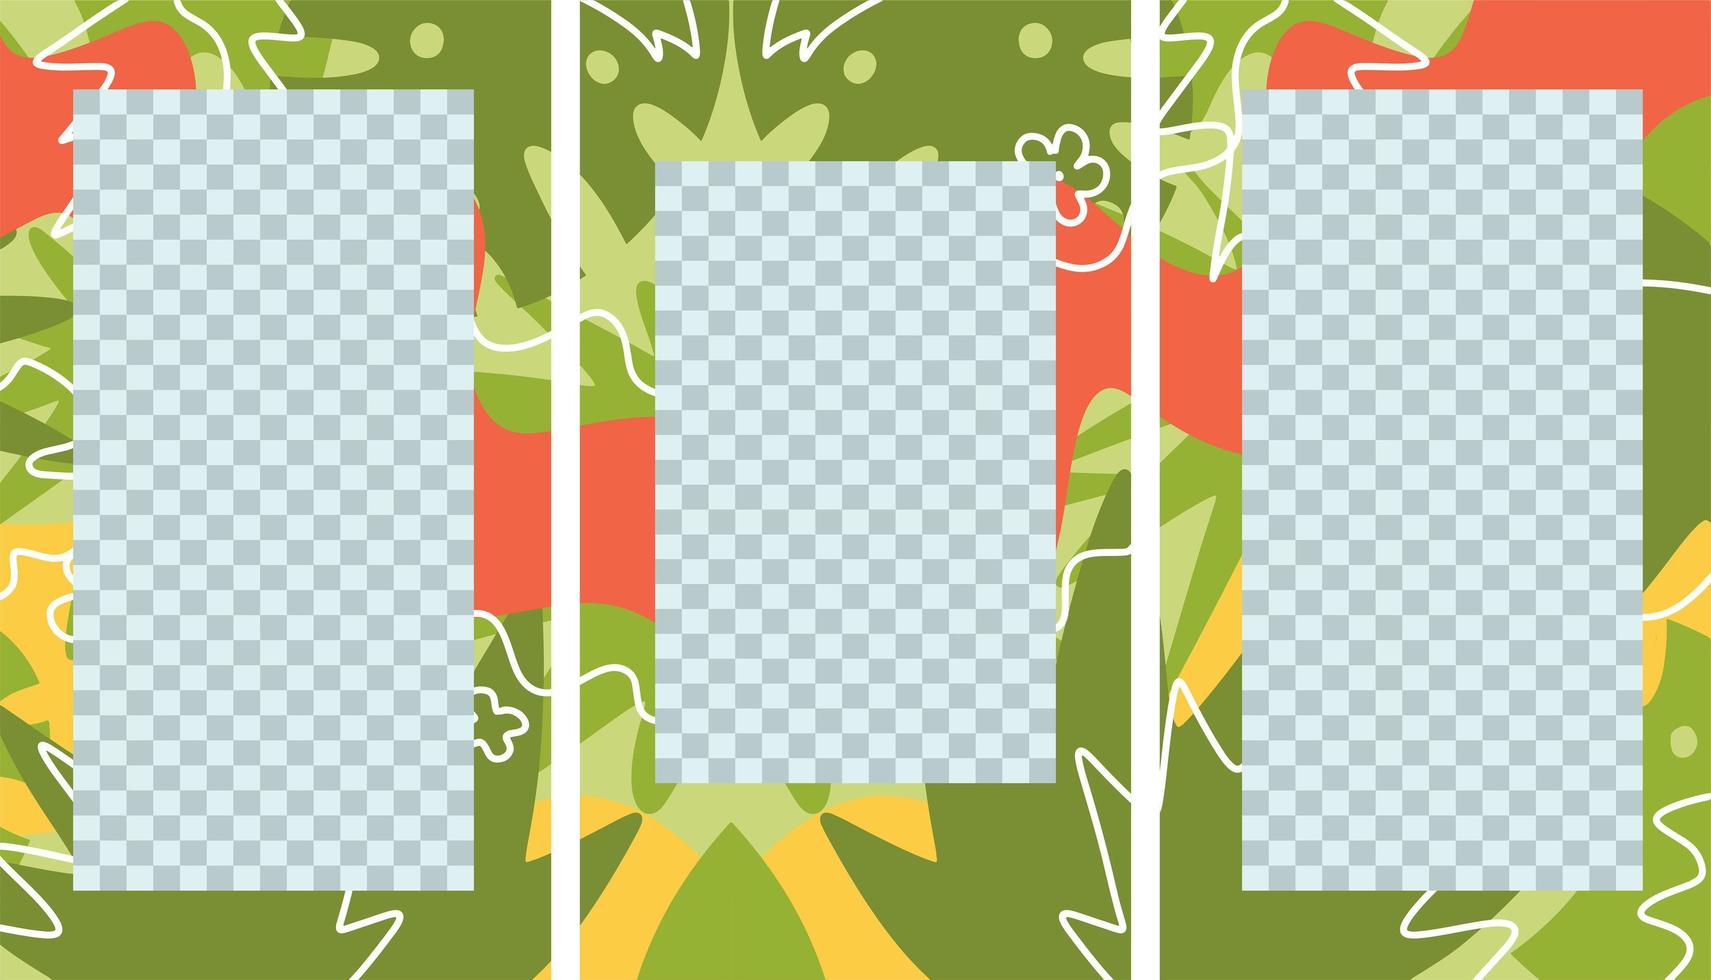 les histoires de médias sociaux publient un ensemble créatif. modèle tropical avec un espace pour le texte et les images photo par des formes abstraites, des dessins au trait. feuilles de palmier vertes. vecteur plat dessiné à la main de 3 collages de puzzle isolés.